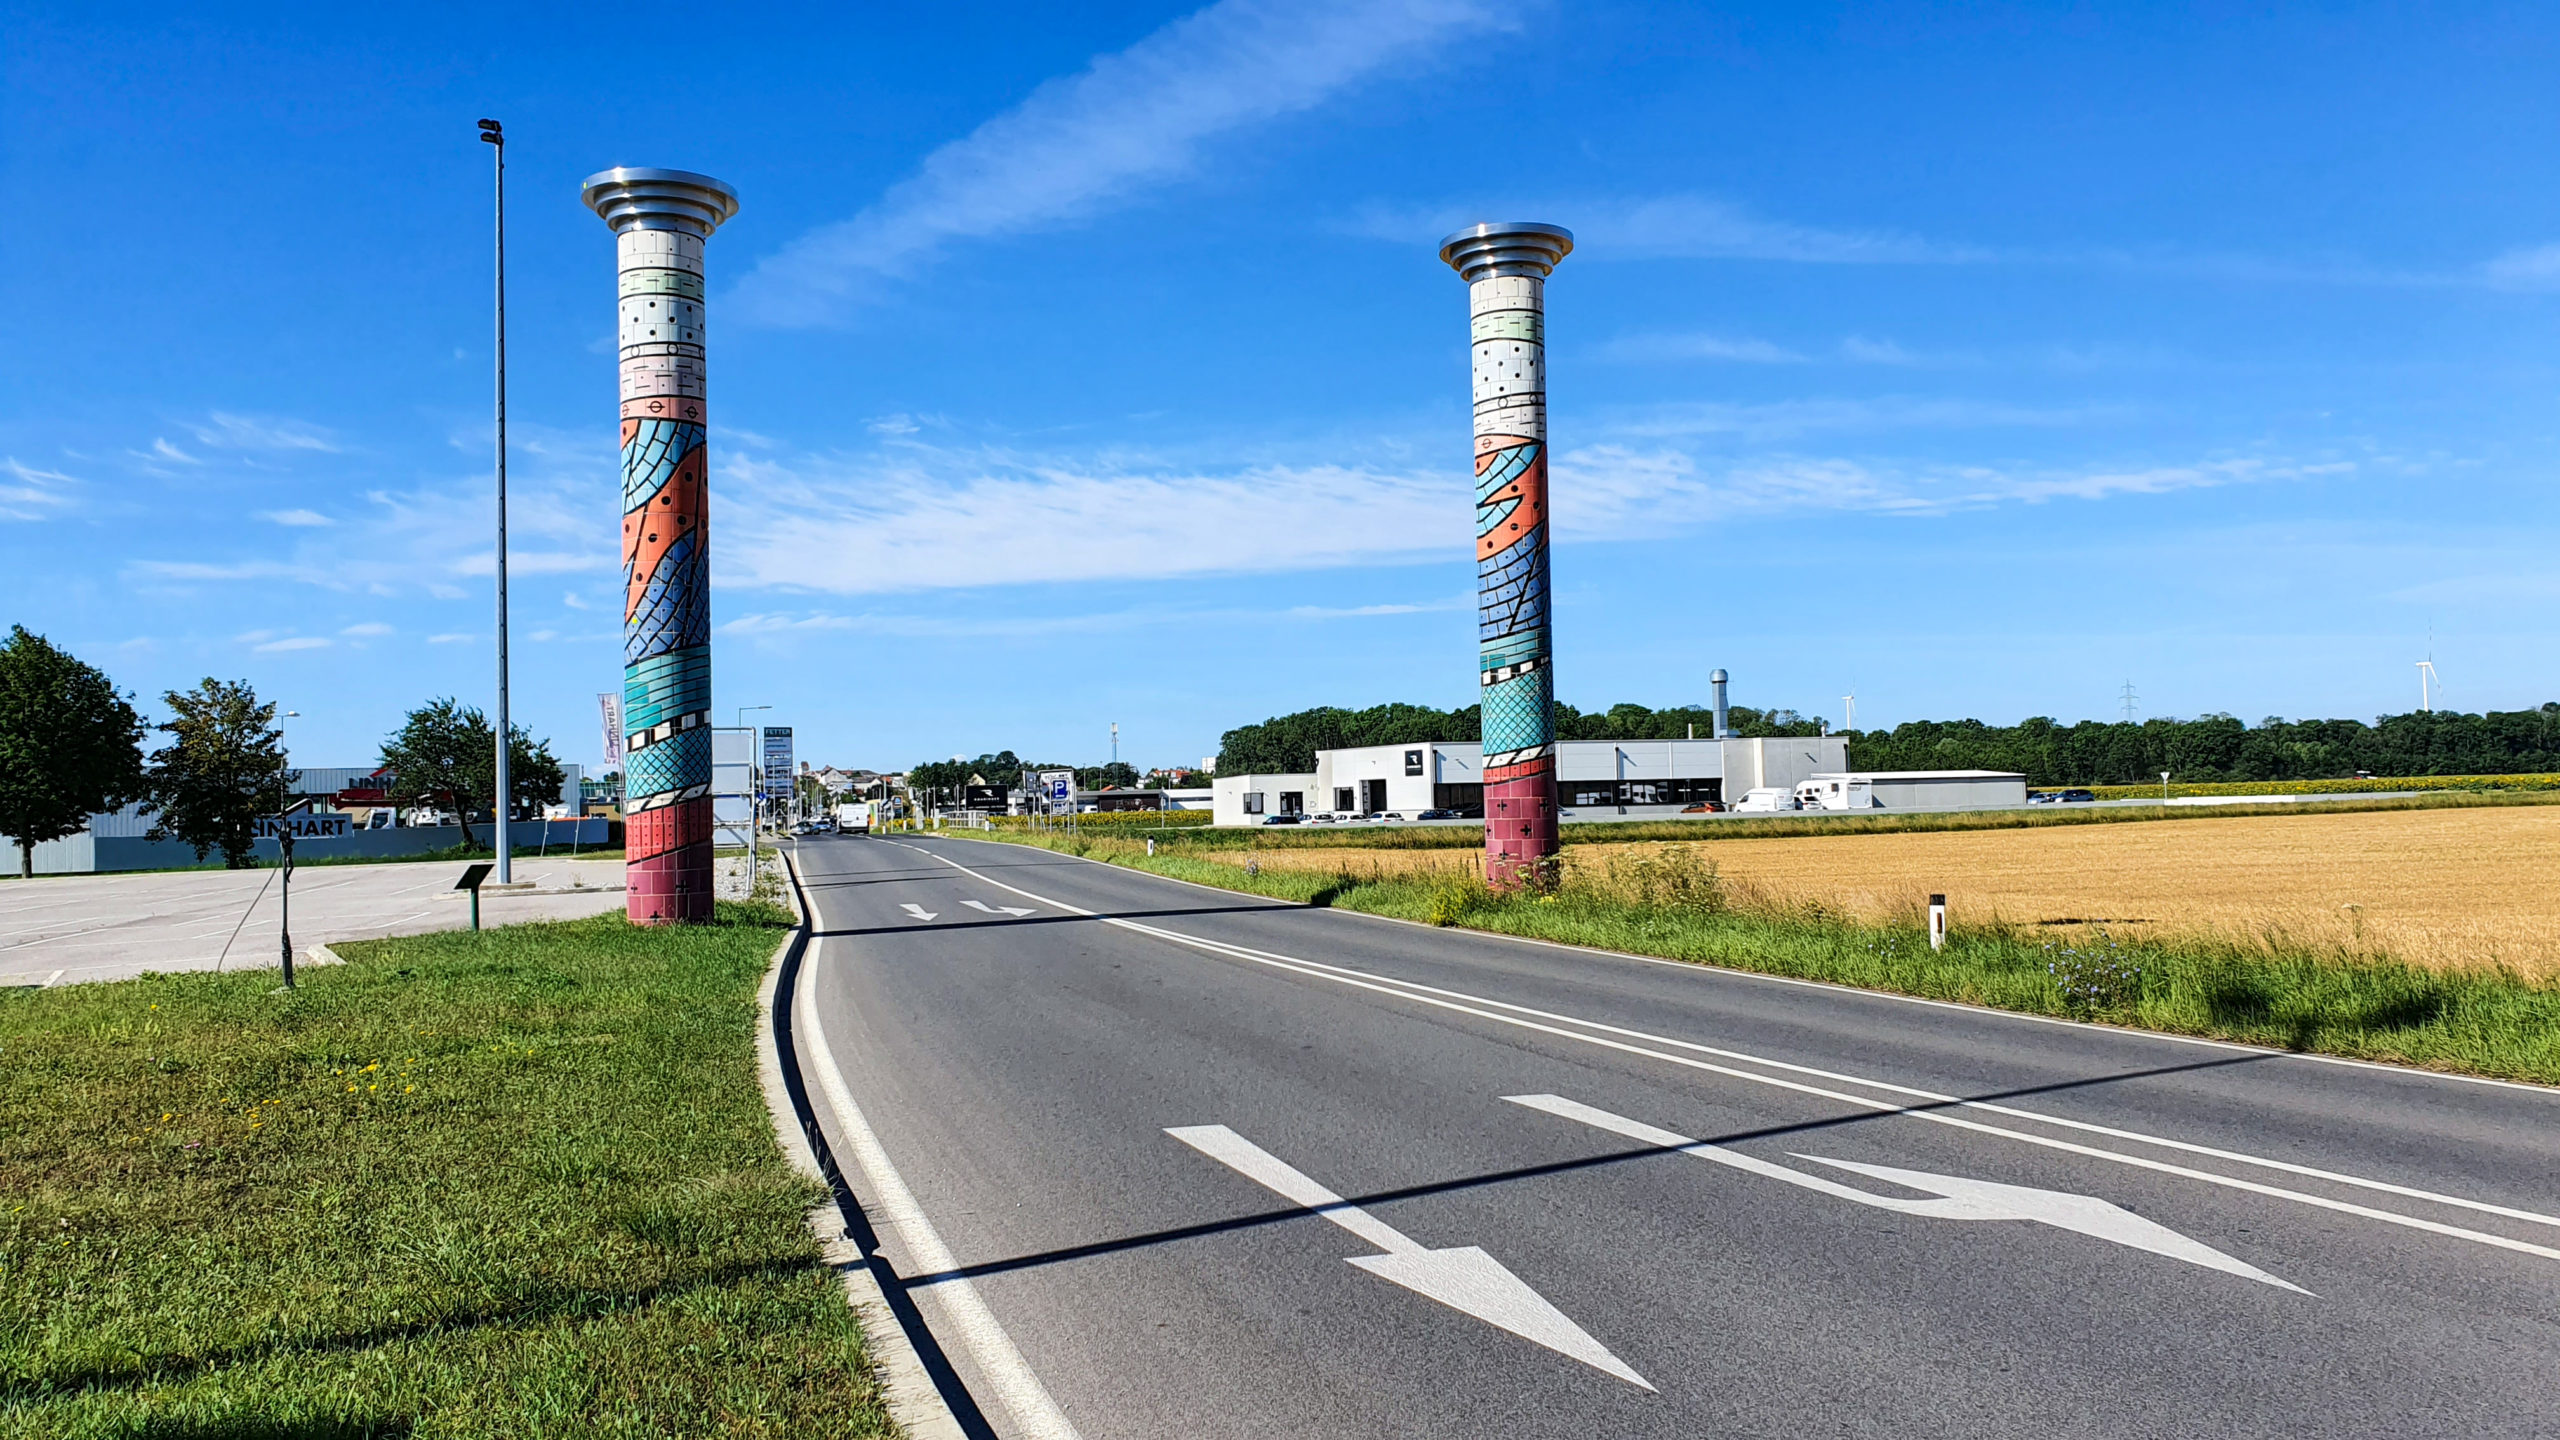 Protteser Tor in Gänserndorf